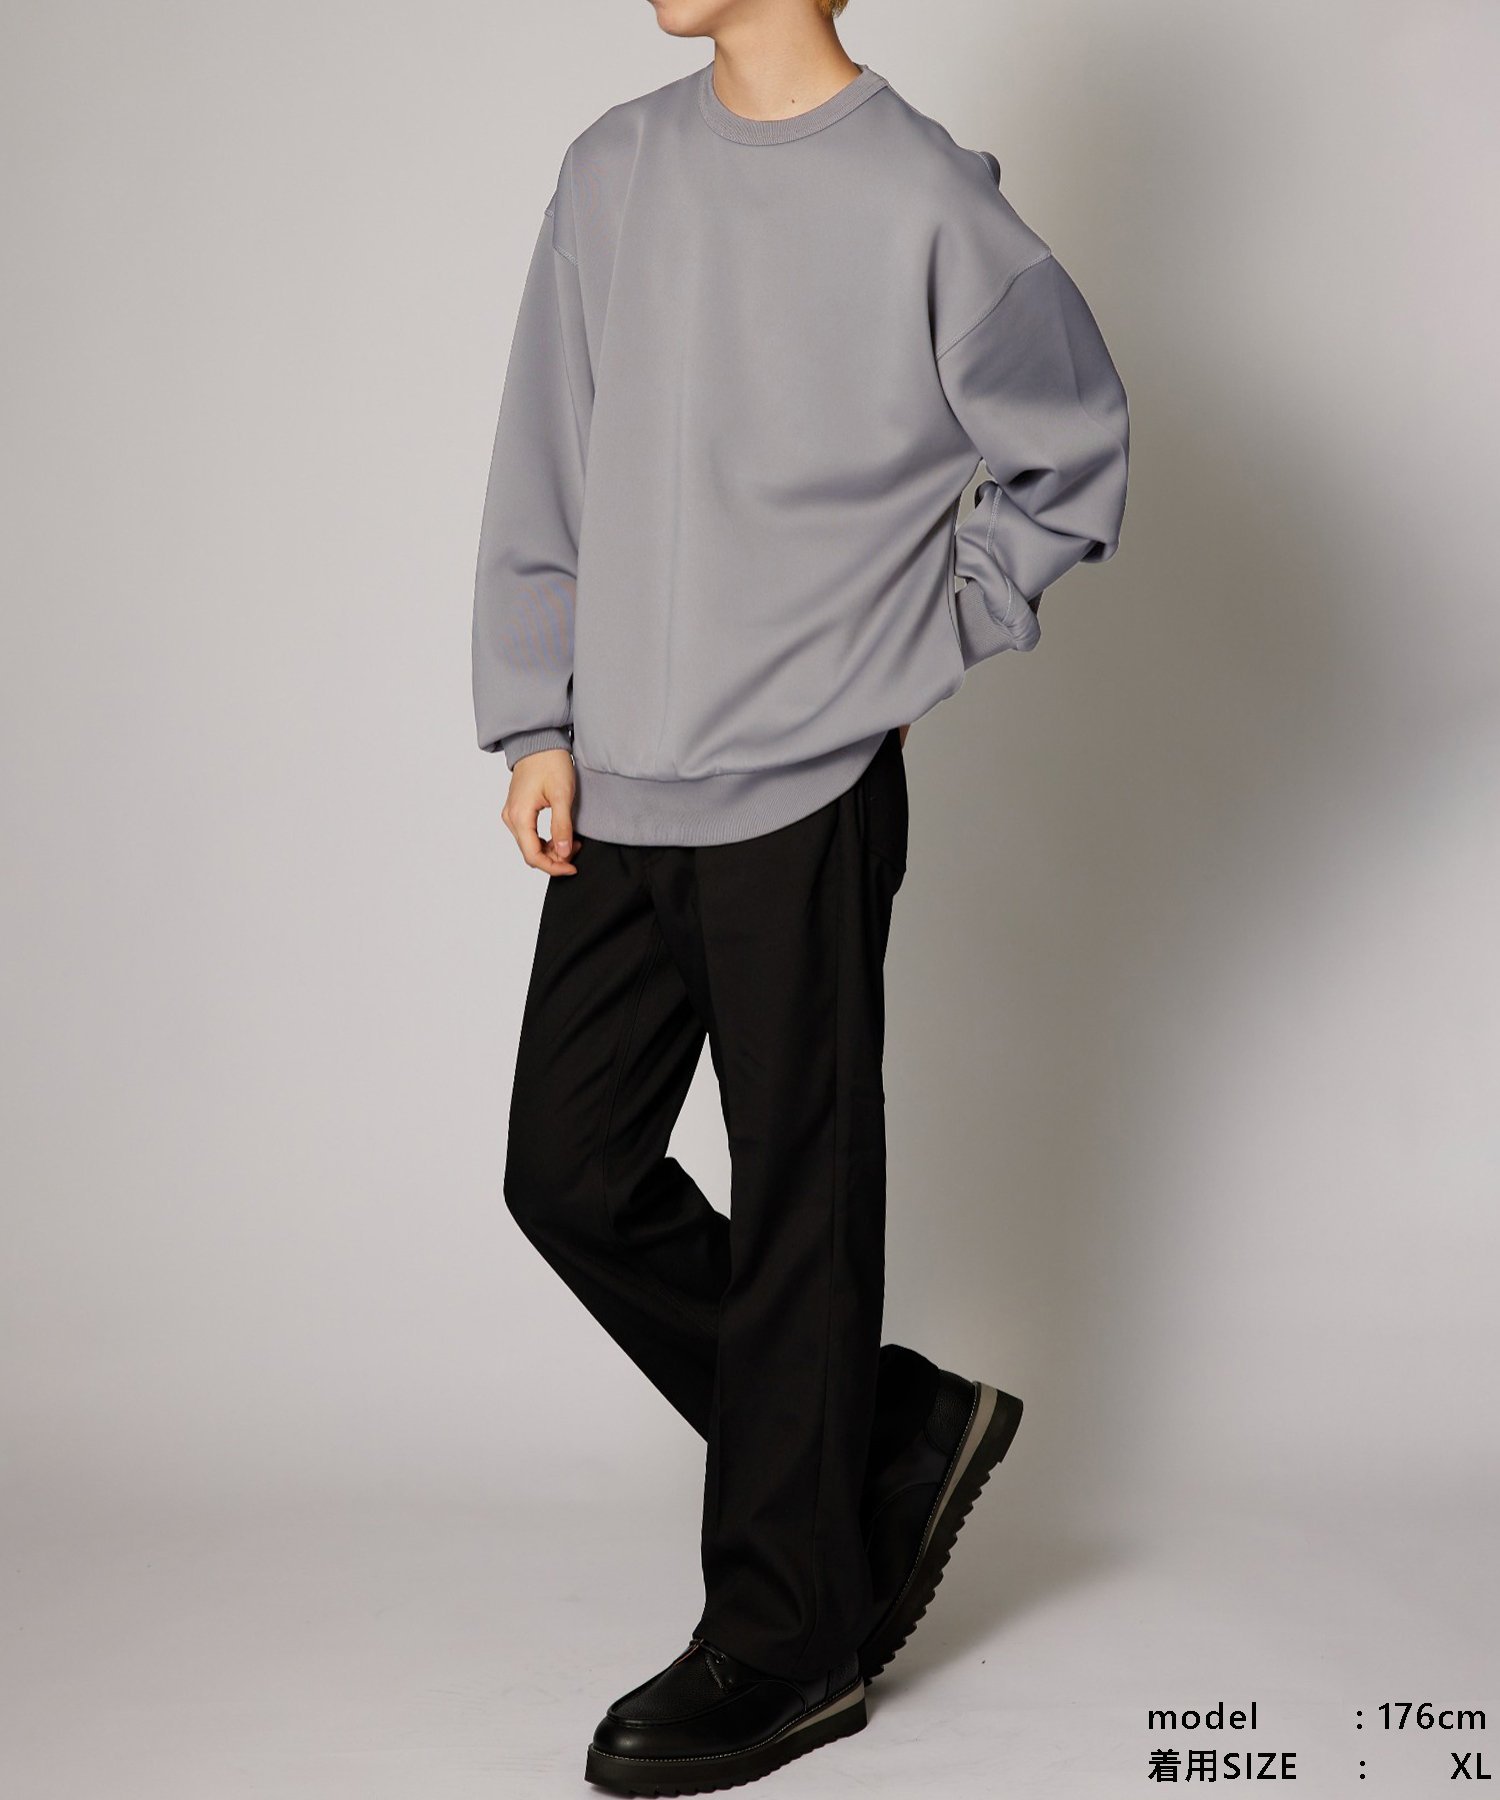 ユニクロ スウェットクルーネックシャツ(長袖) Mサイズ - トップス